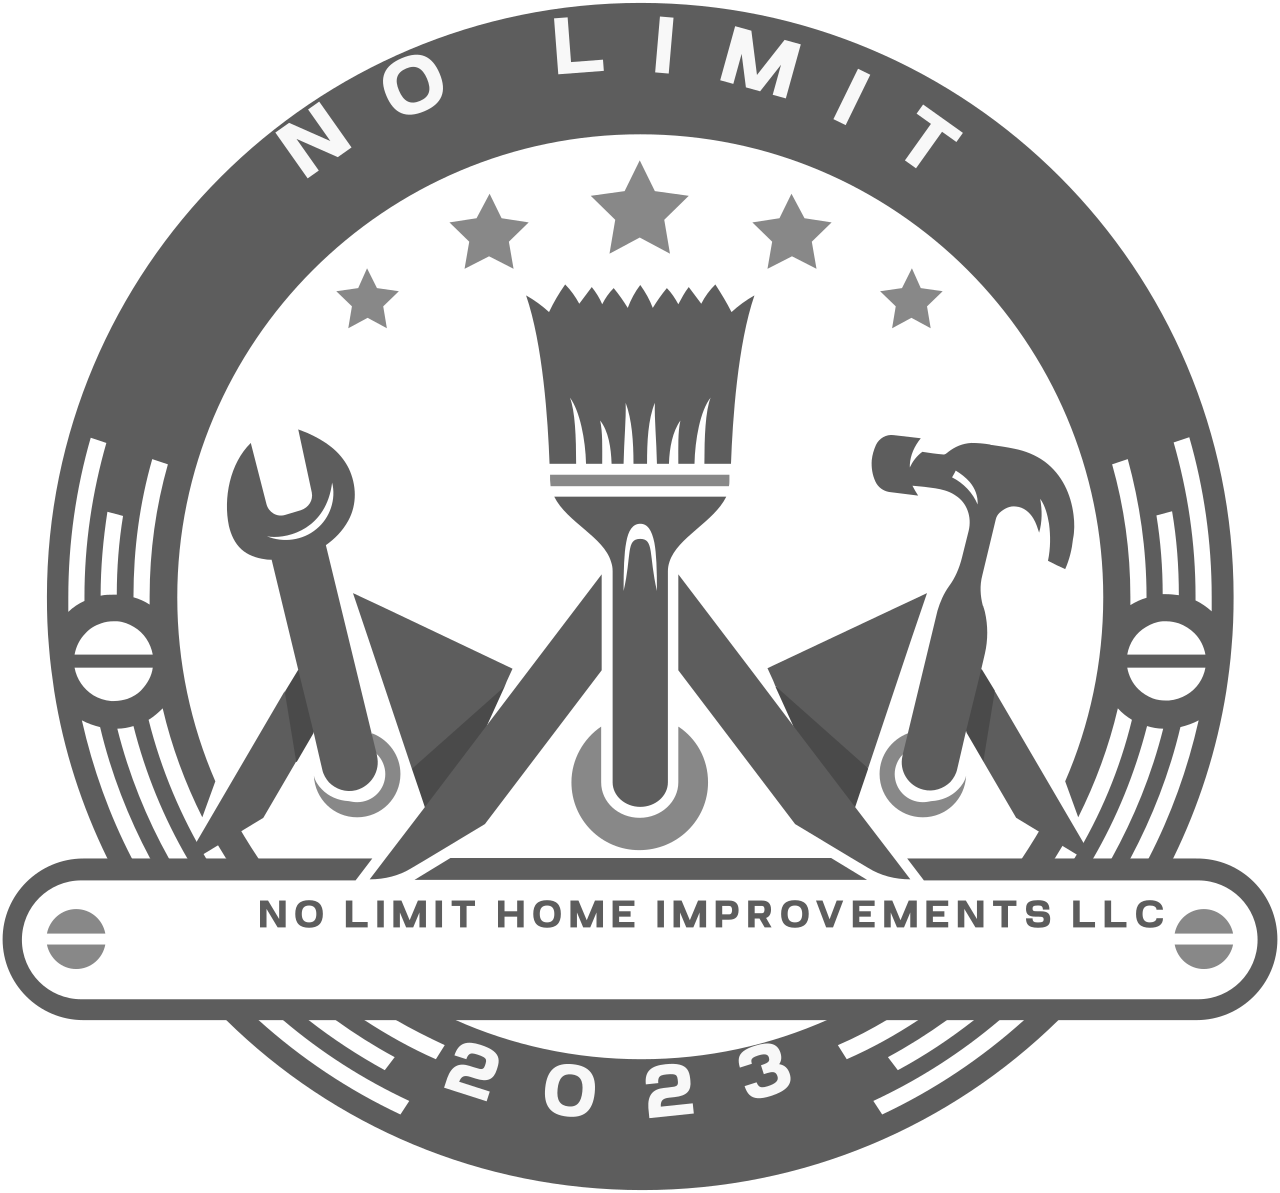 No limit home improvements LLC's logo